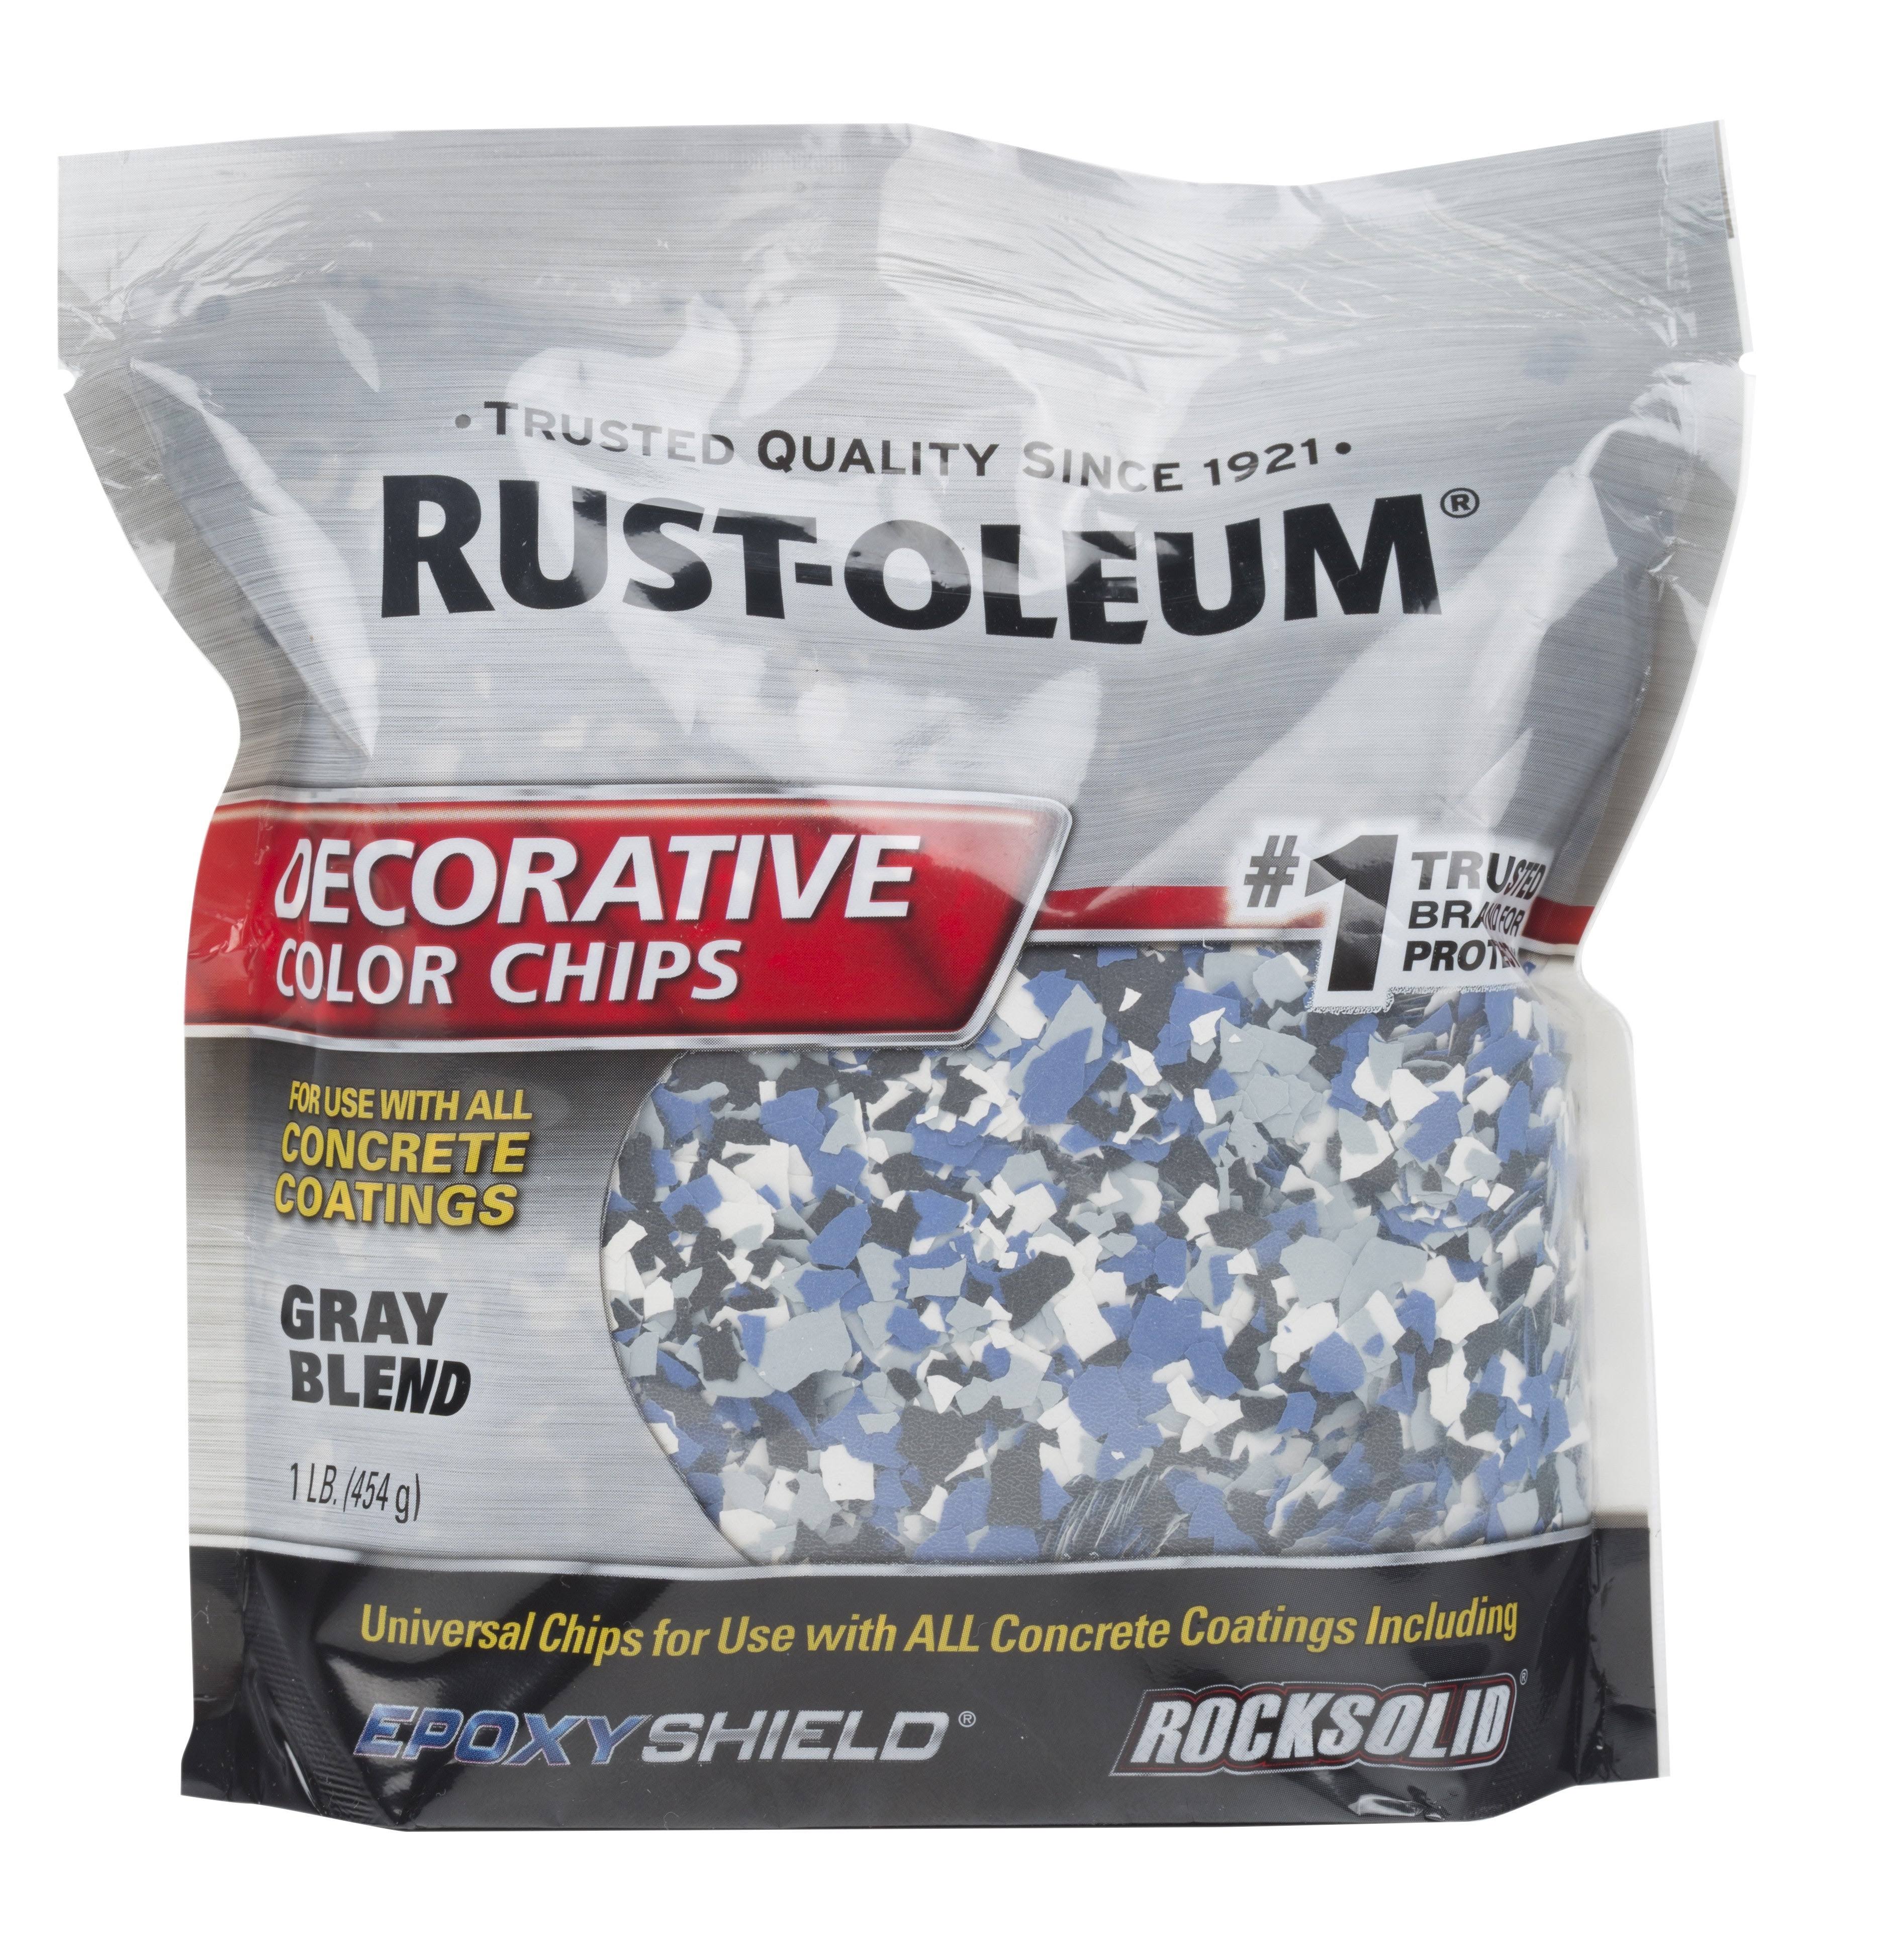 Rust-Oleum 301359 Decorative Color Chips - Gray Blend, 1lb